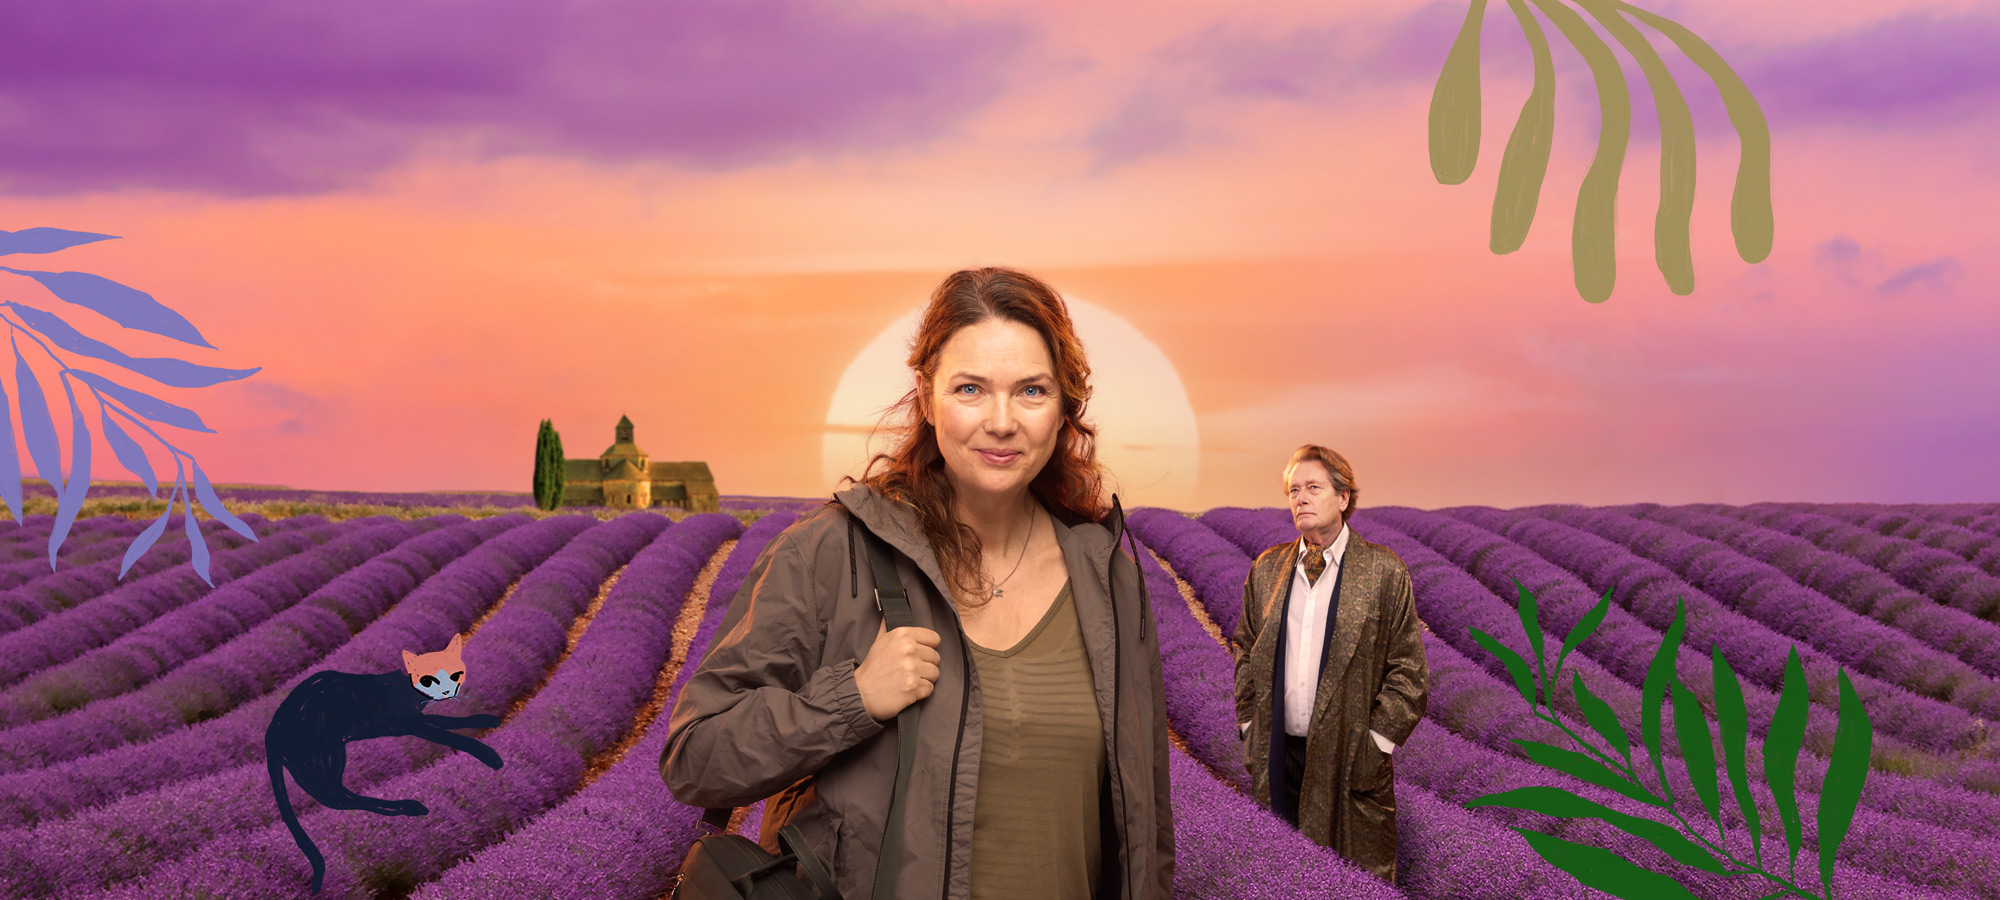 Agneta står med sin resväska ute på ett lavendelfält i Frankrike